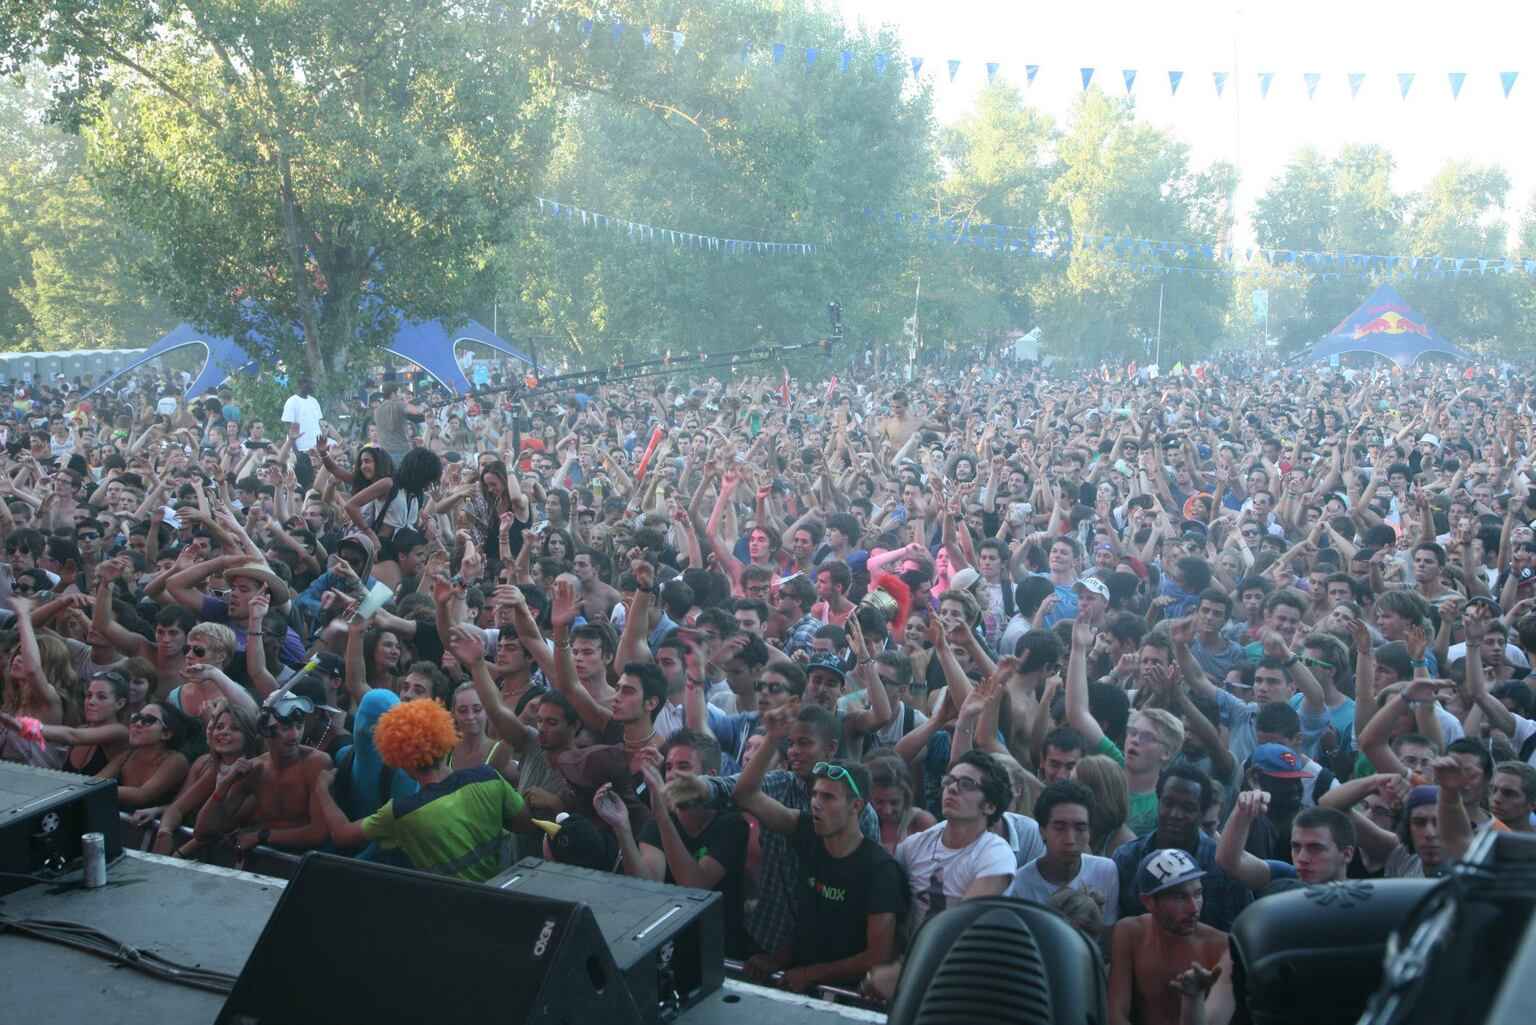 Festival Inox Park Paris 2012 en partenariat avec Trance In France, avec notamment Armin van Buuren dans la line up